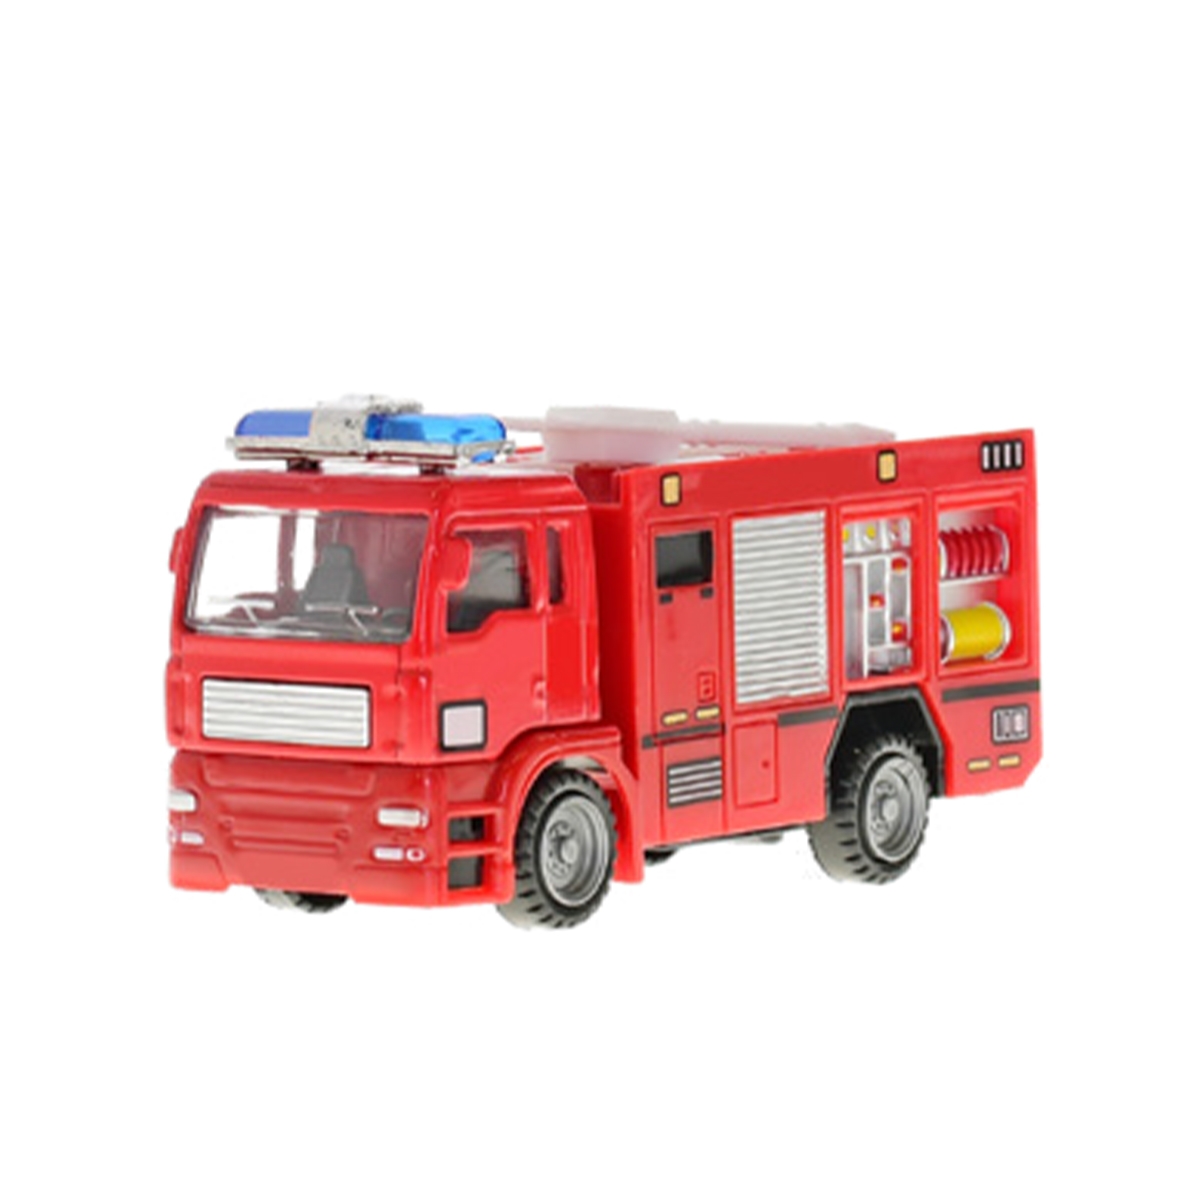 Sada auta hasiči, kov, 12-18 cm, 3 ks